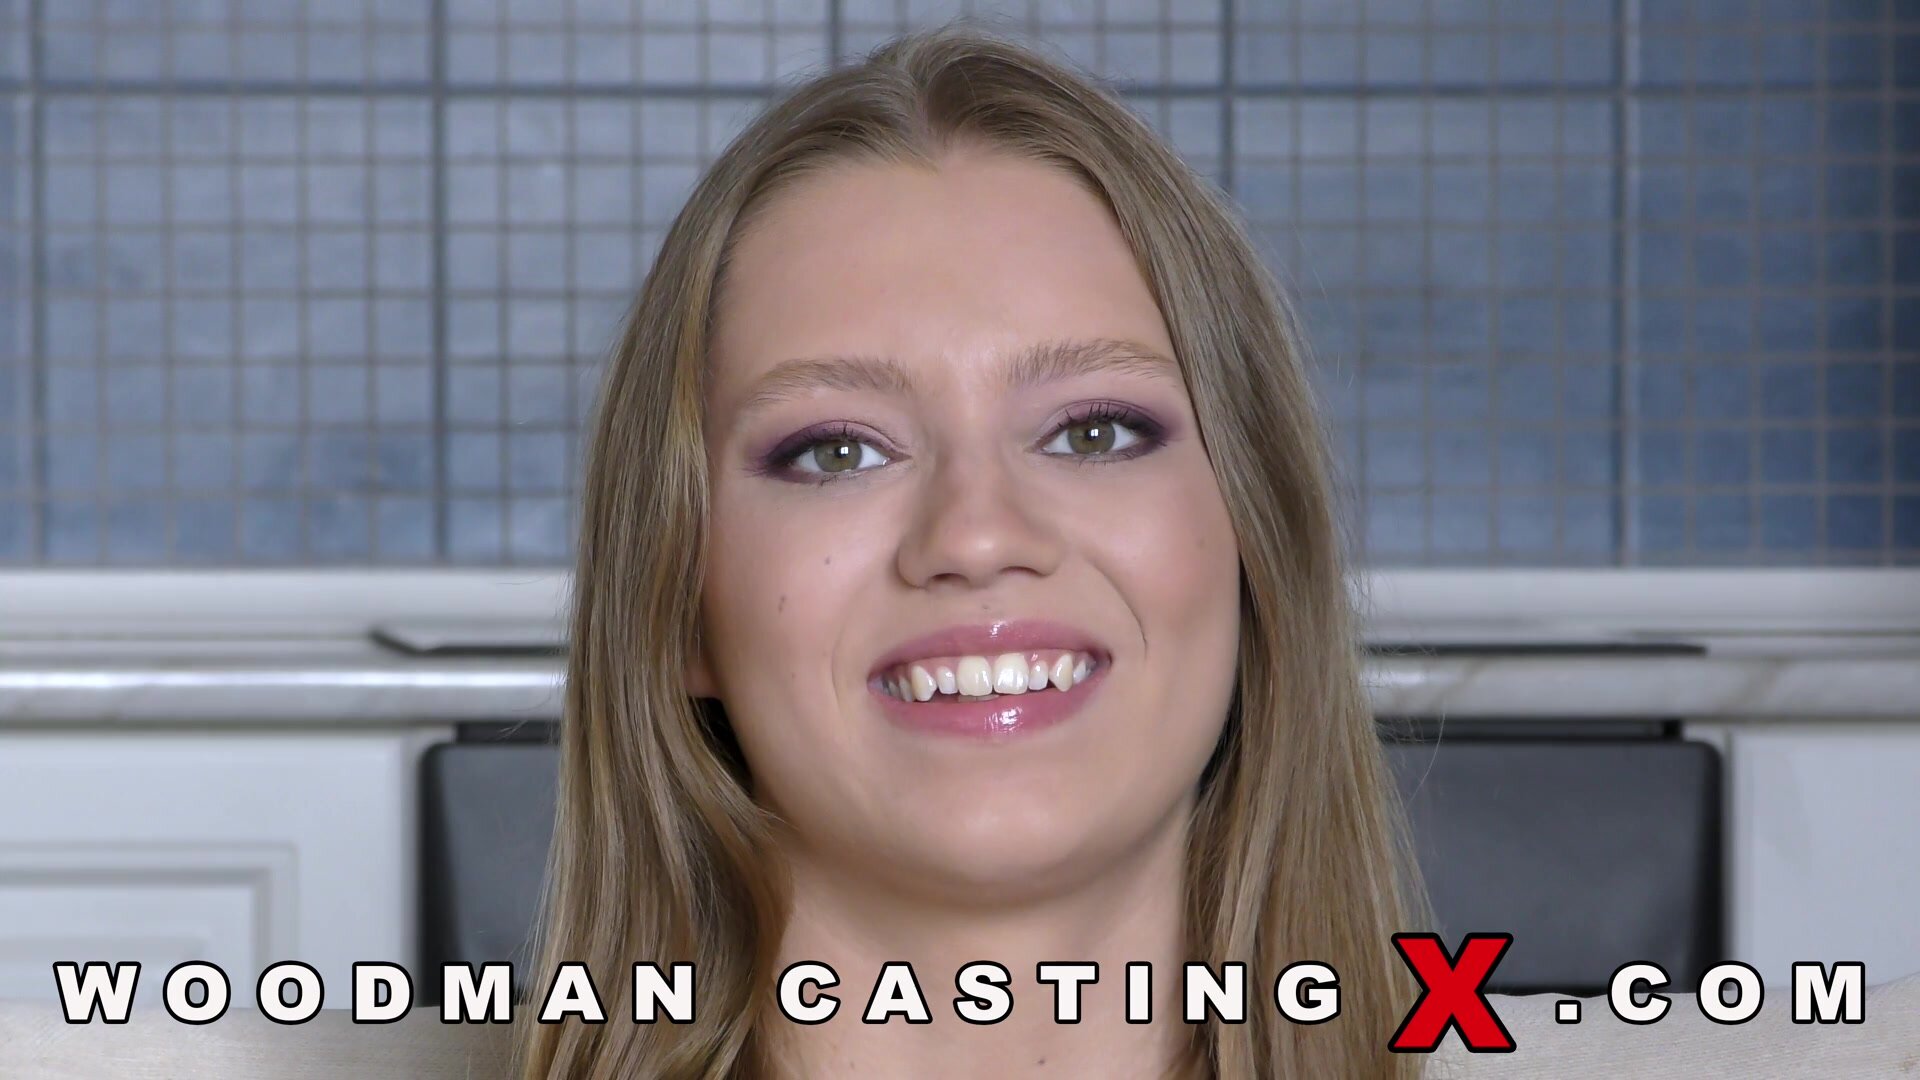 WoodmanCasting-X - Mia Split Casting Hard